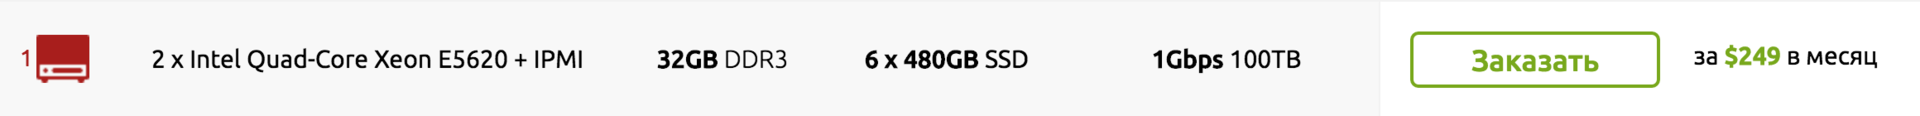 Cерверы с «устаревшими» CPU или более высокая цена? Мы нашли компромисс! 2 x E5620 - 32GB DDR3 - 6 x 240GB SSD - 1Gbps? - 9